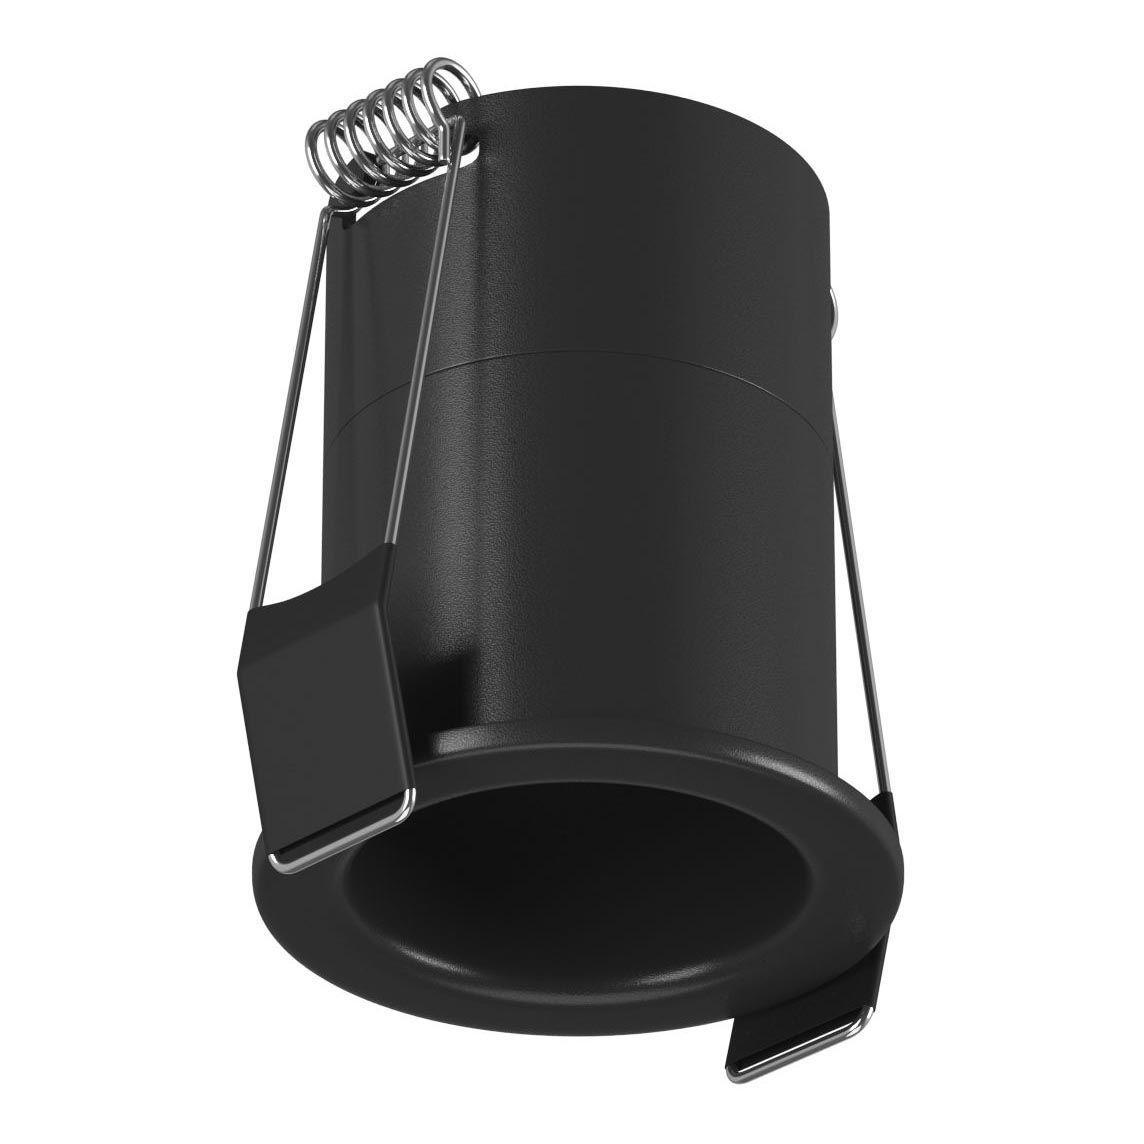 Встраиваемый светодиодный светильник DesignLed DL-A004-7-BL-WW 006639 рюкзак peak design everyday 30l v2 0 чёрный bedb 30 bk 2